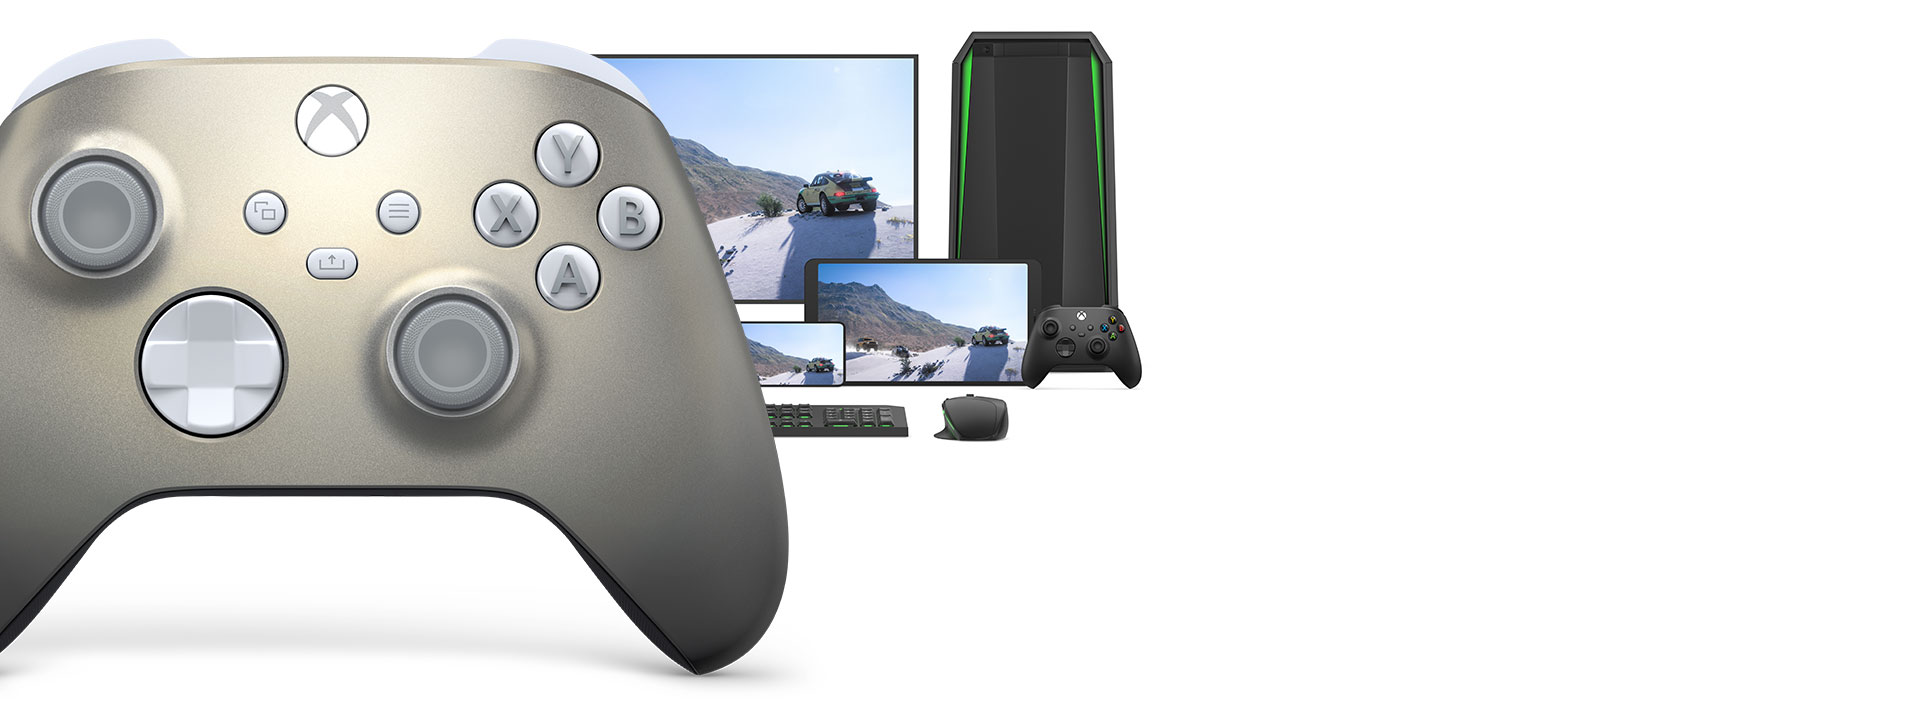 Беспроводной геймпад Xbox особой серии Lunar Shift с компьютером, телевизором и консолью Xbox Series S